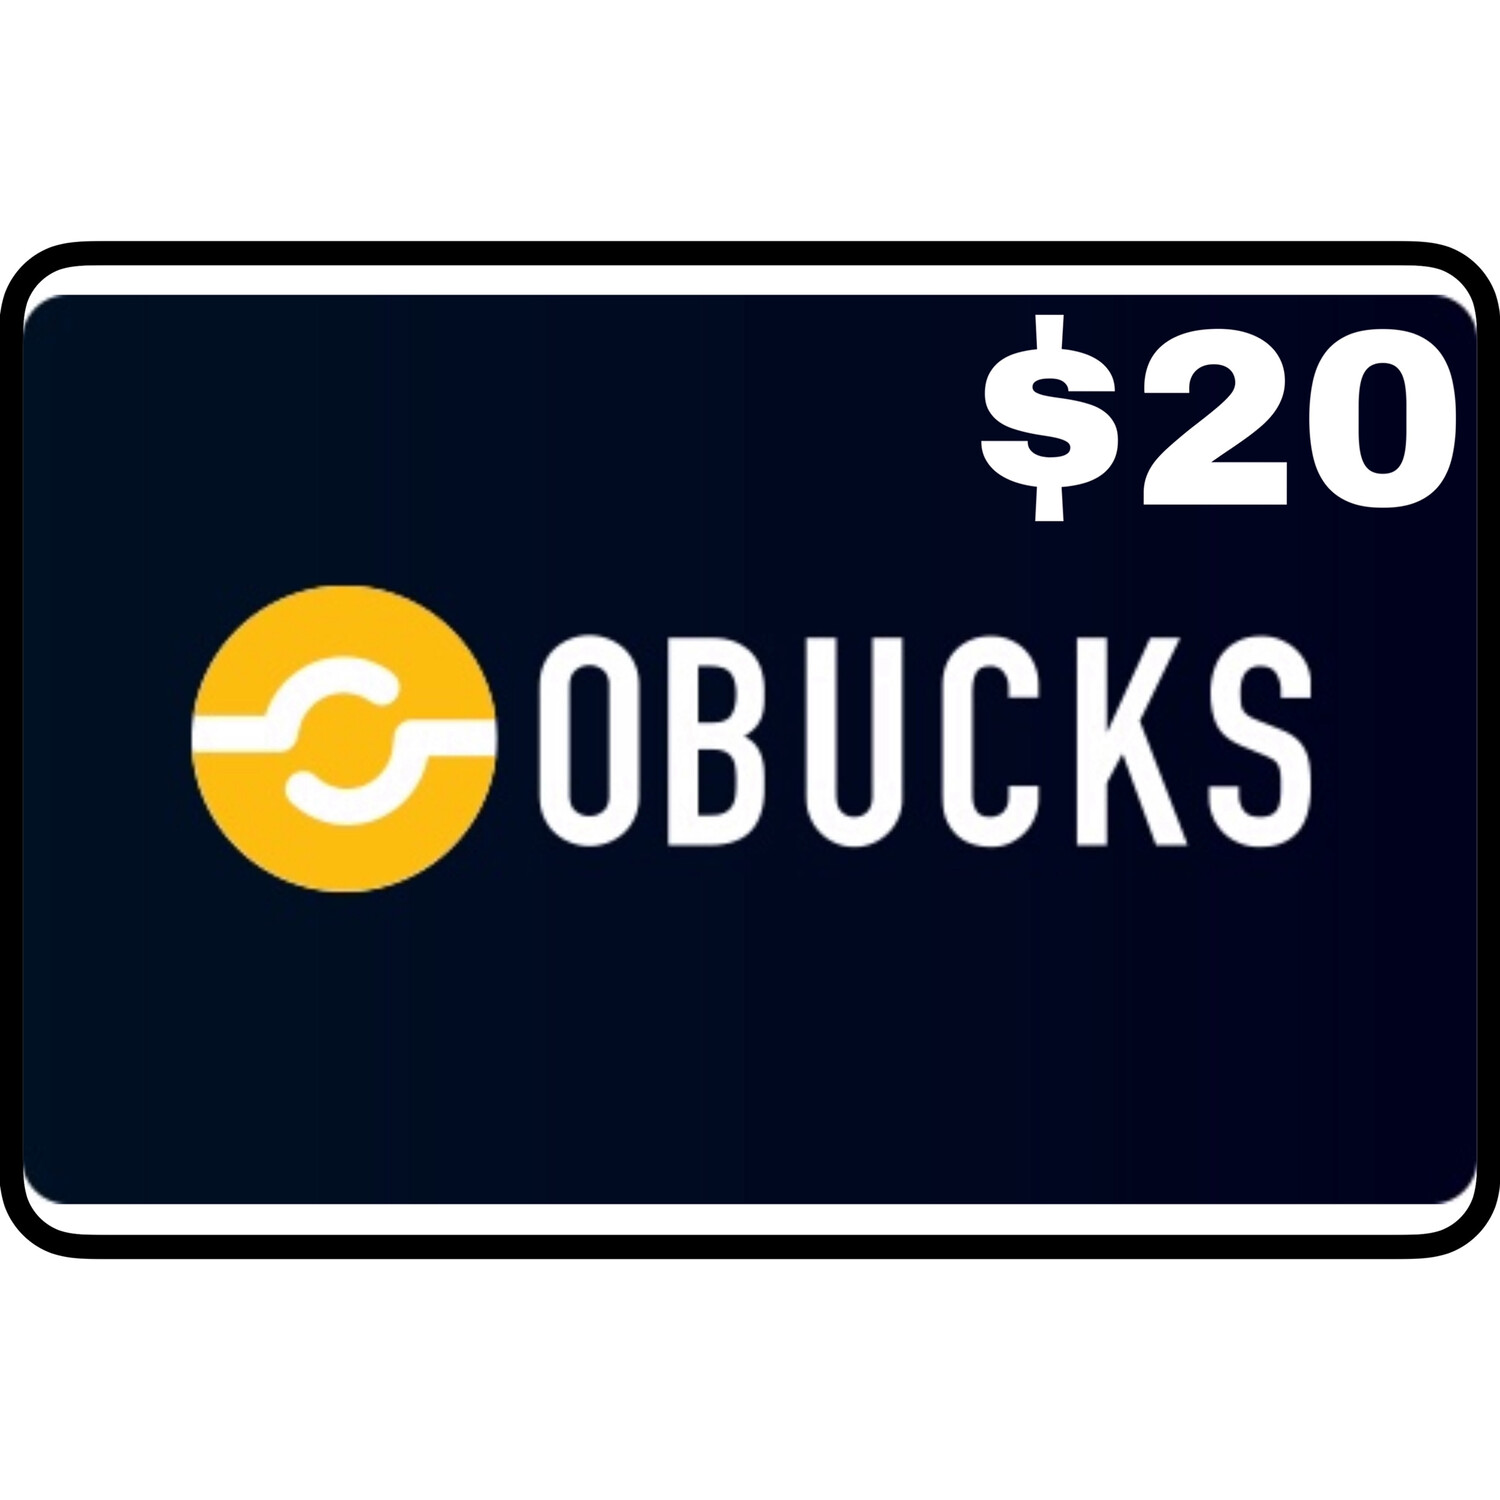 Openbucks Gift Card $20 (Obucks)